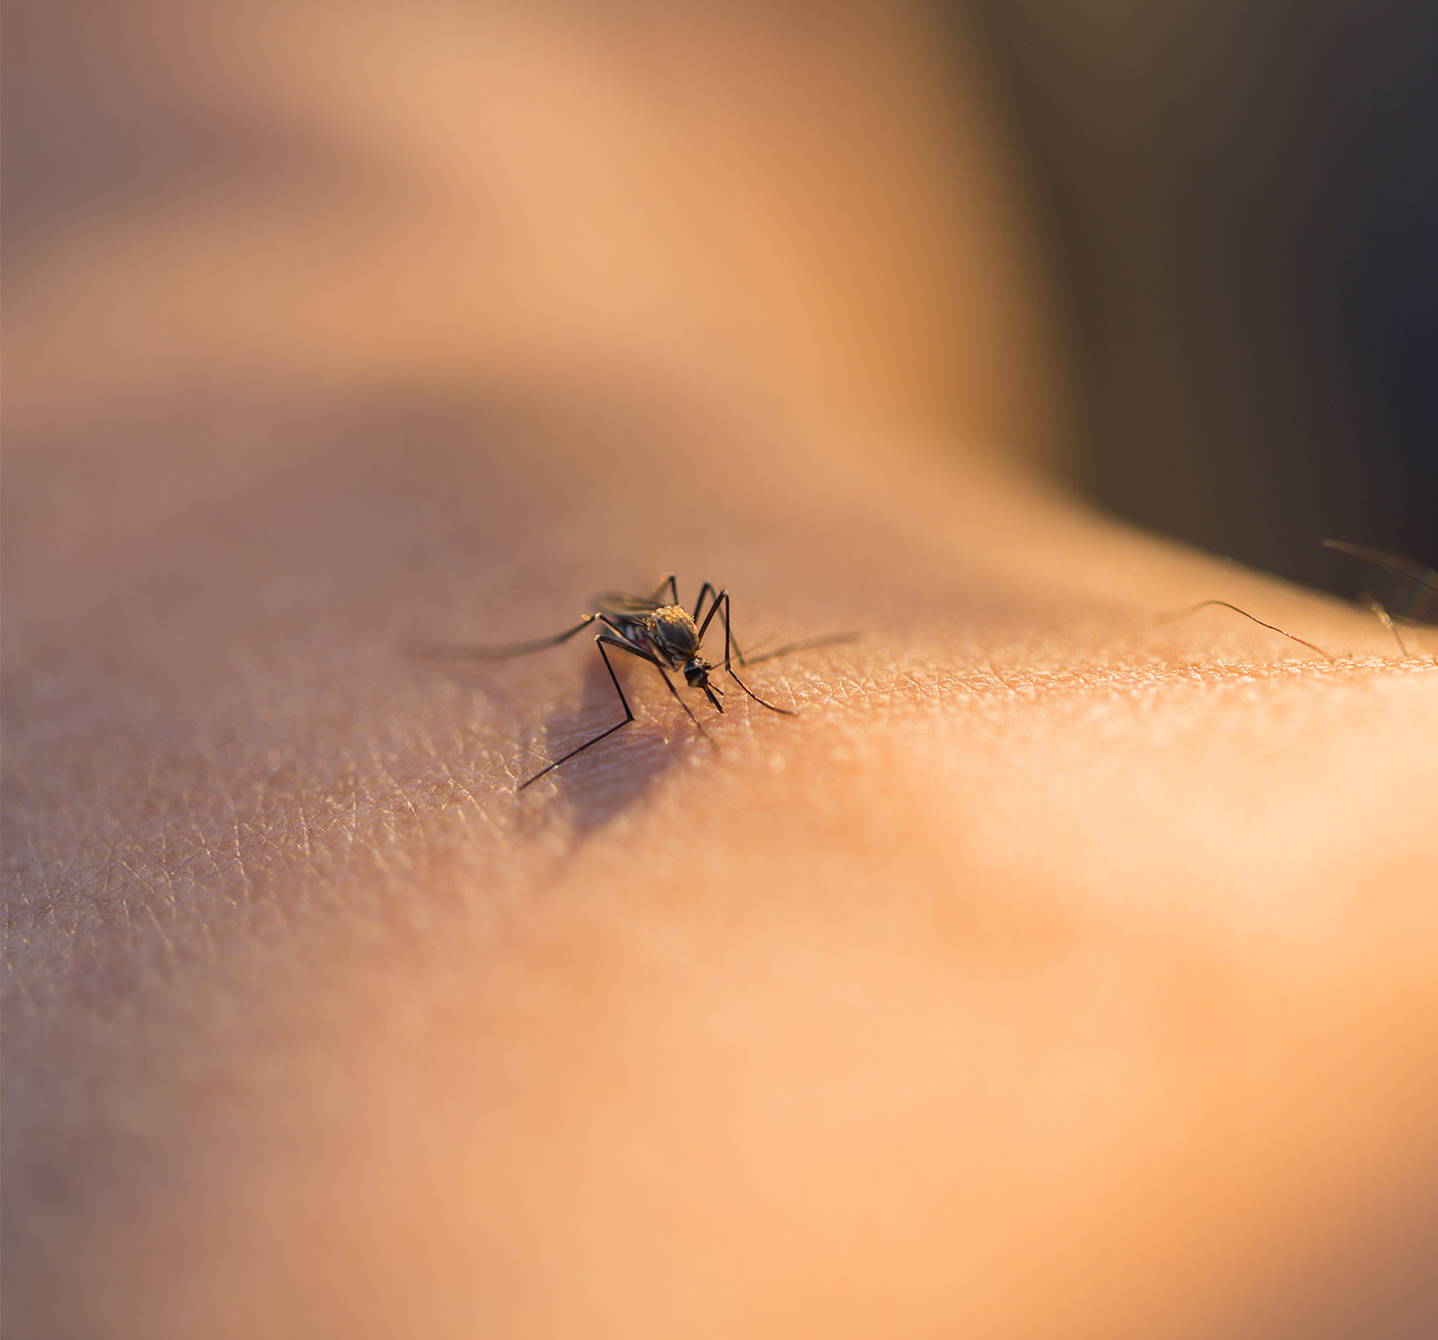 Moustique se posant sur la peau d’une personne et se nourrissant. Il y a des produits chimiques dans la salive de l’insecte qui peuvent provoquer des symptômes d’allergie aux piqûres de moustiques.